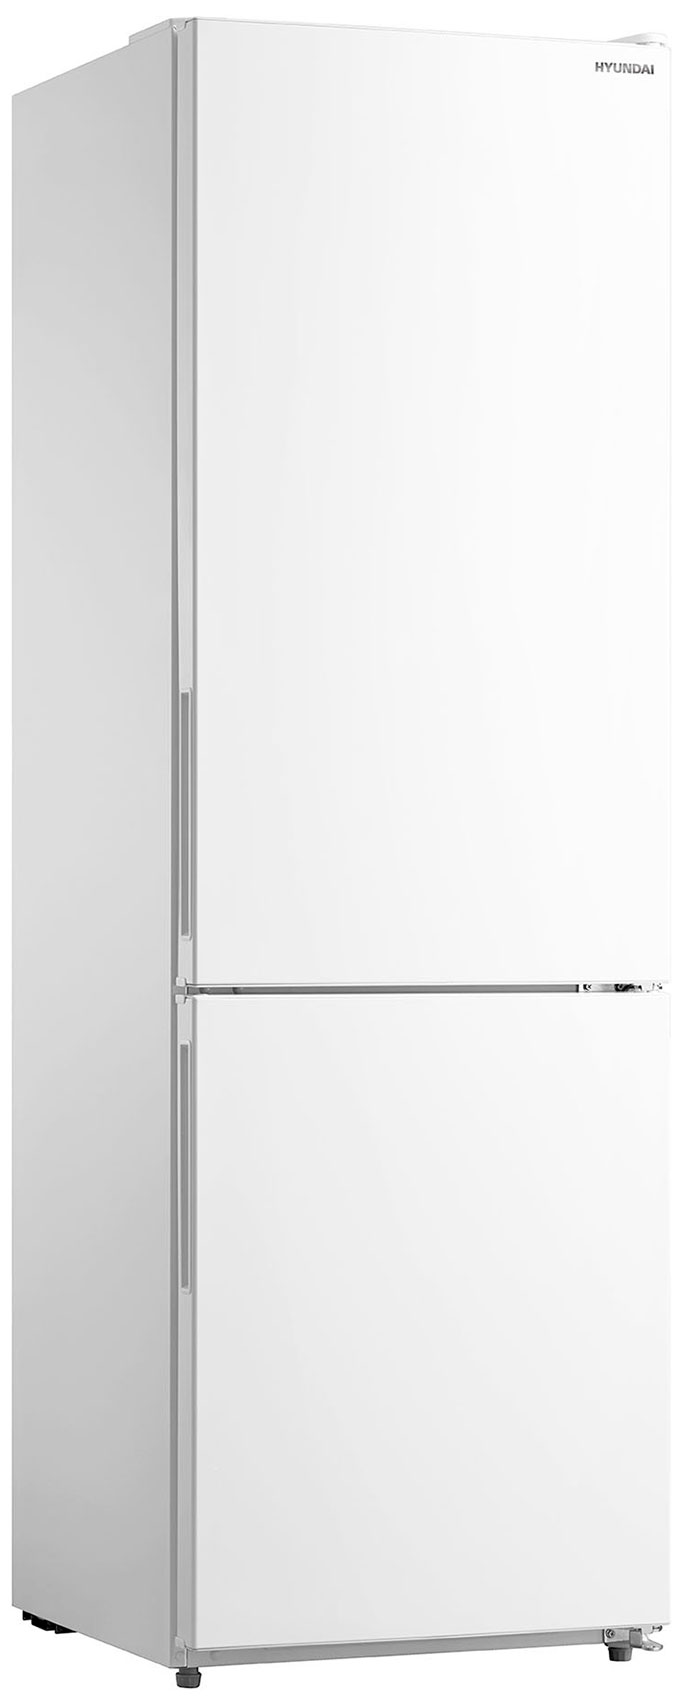 Двухкамерный холодильник Hyundai CC3093FWT белый двухкамерный холодильник hyundai cc3593fwt белый